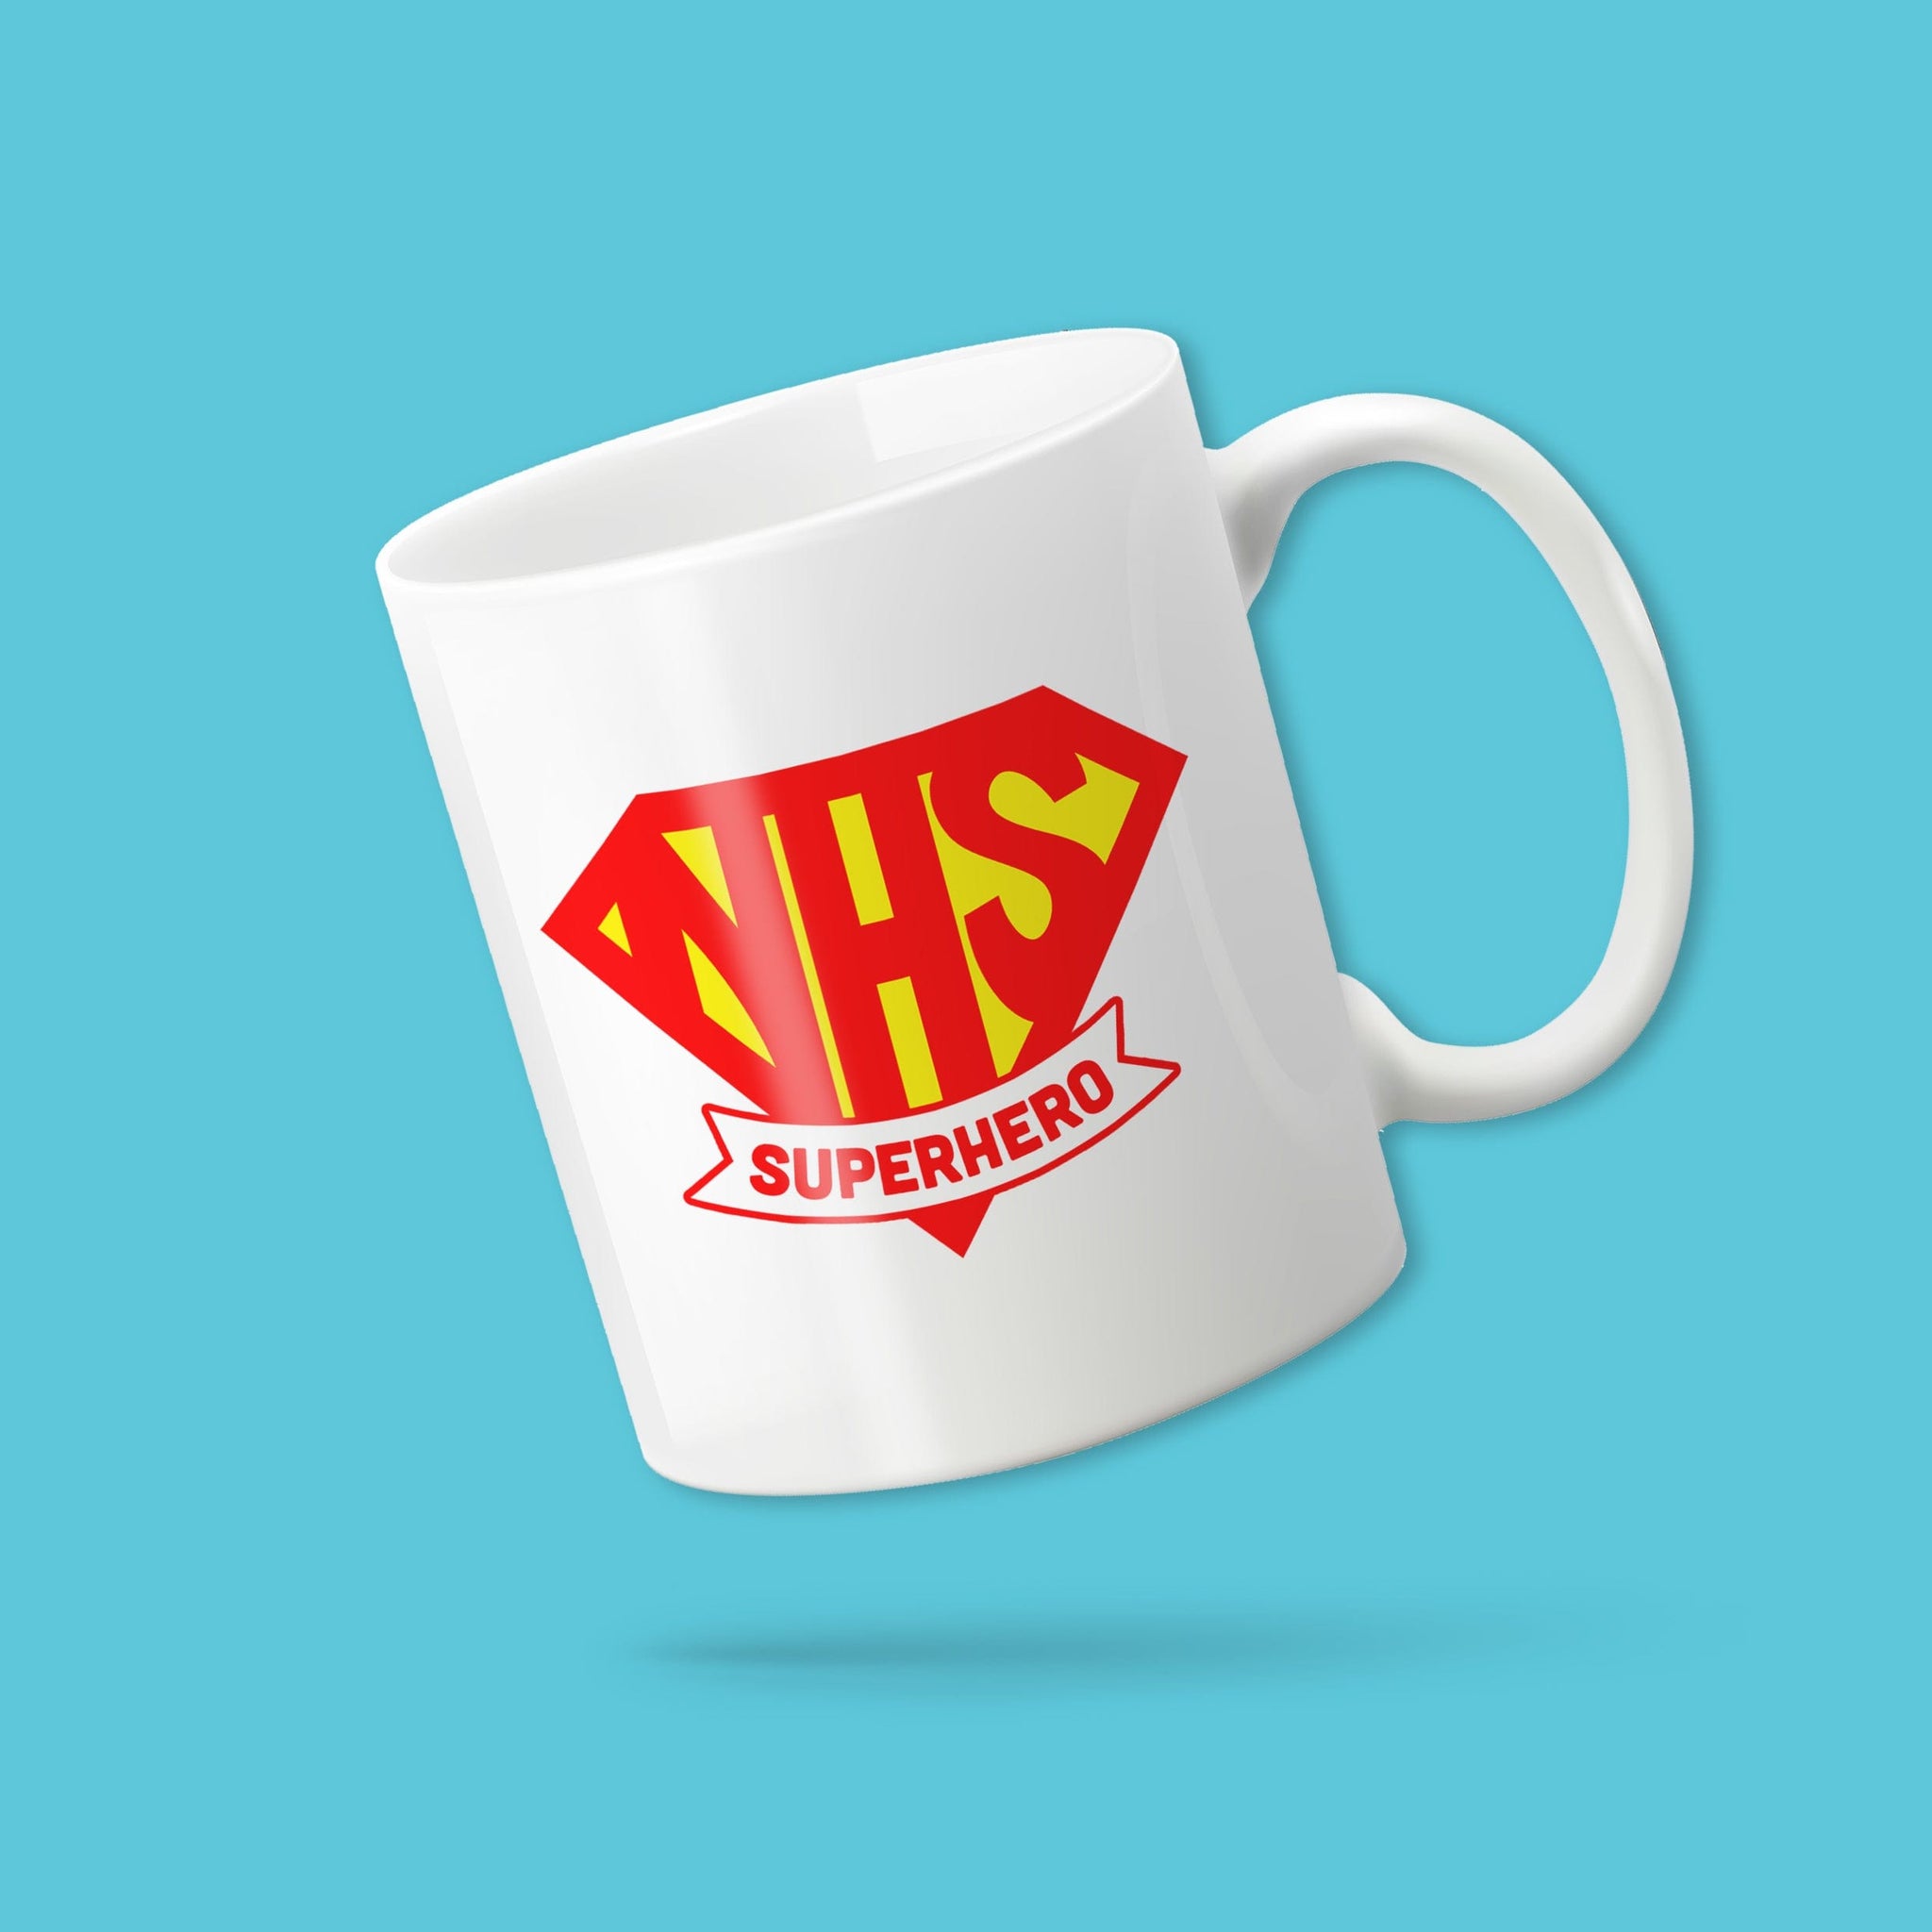 NHS Superhero mug